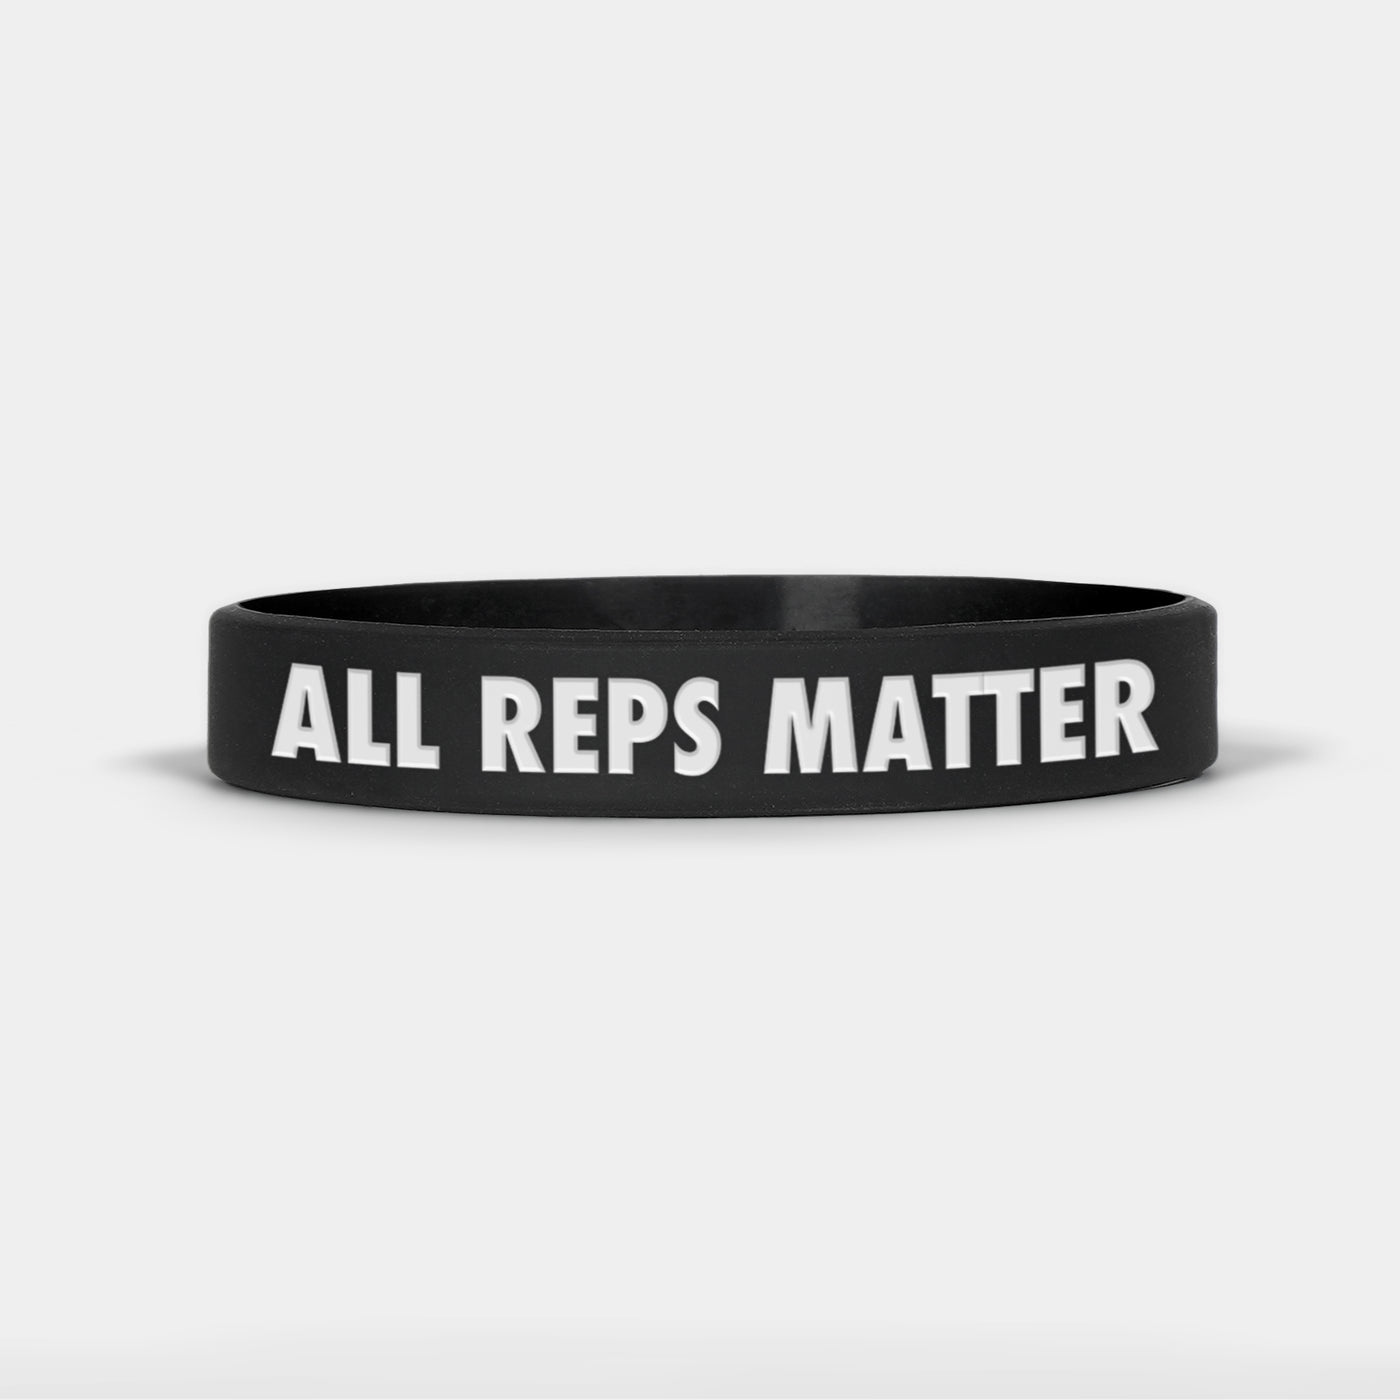 All Reps Matter Motivational Wristband